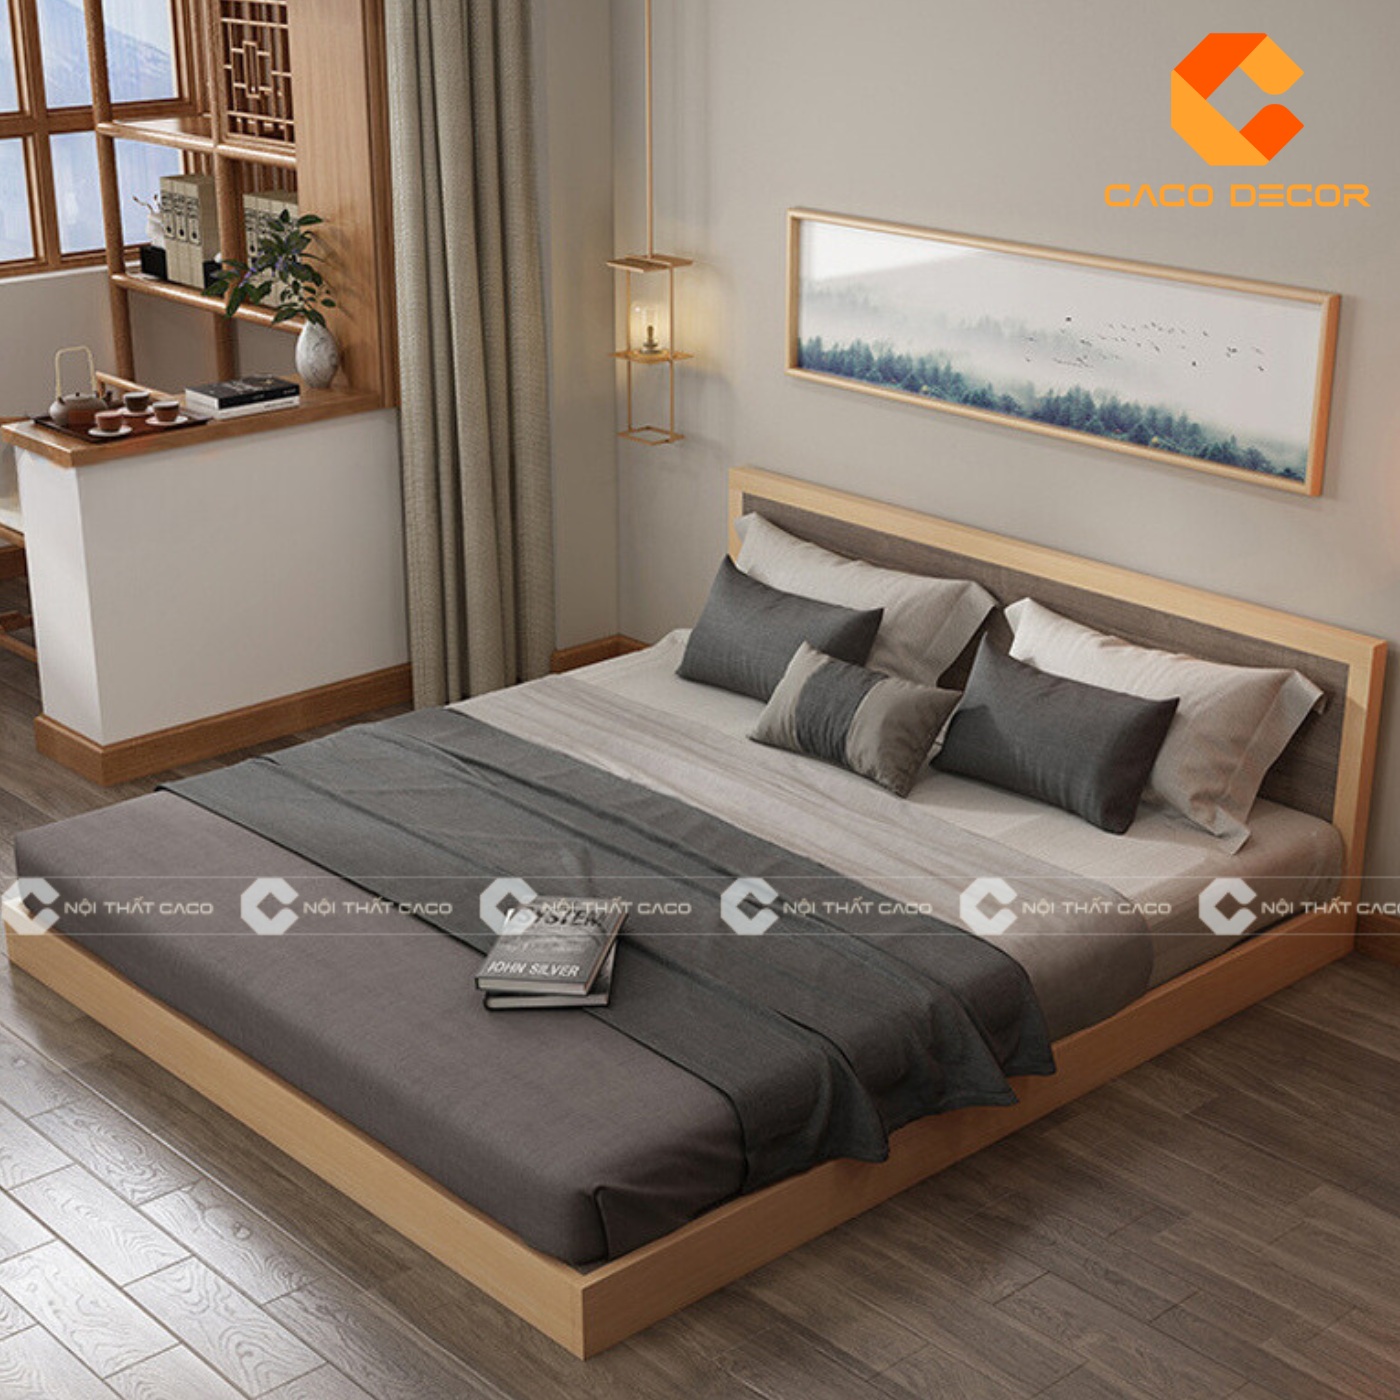 Giường ngủ gỗ công nghiệp đẹp, chất lượng với giá tốt nhất thị trường 23